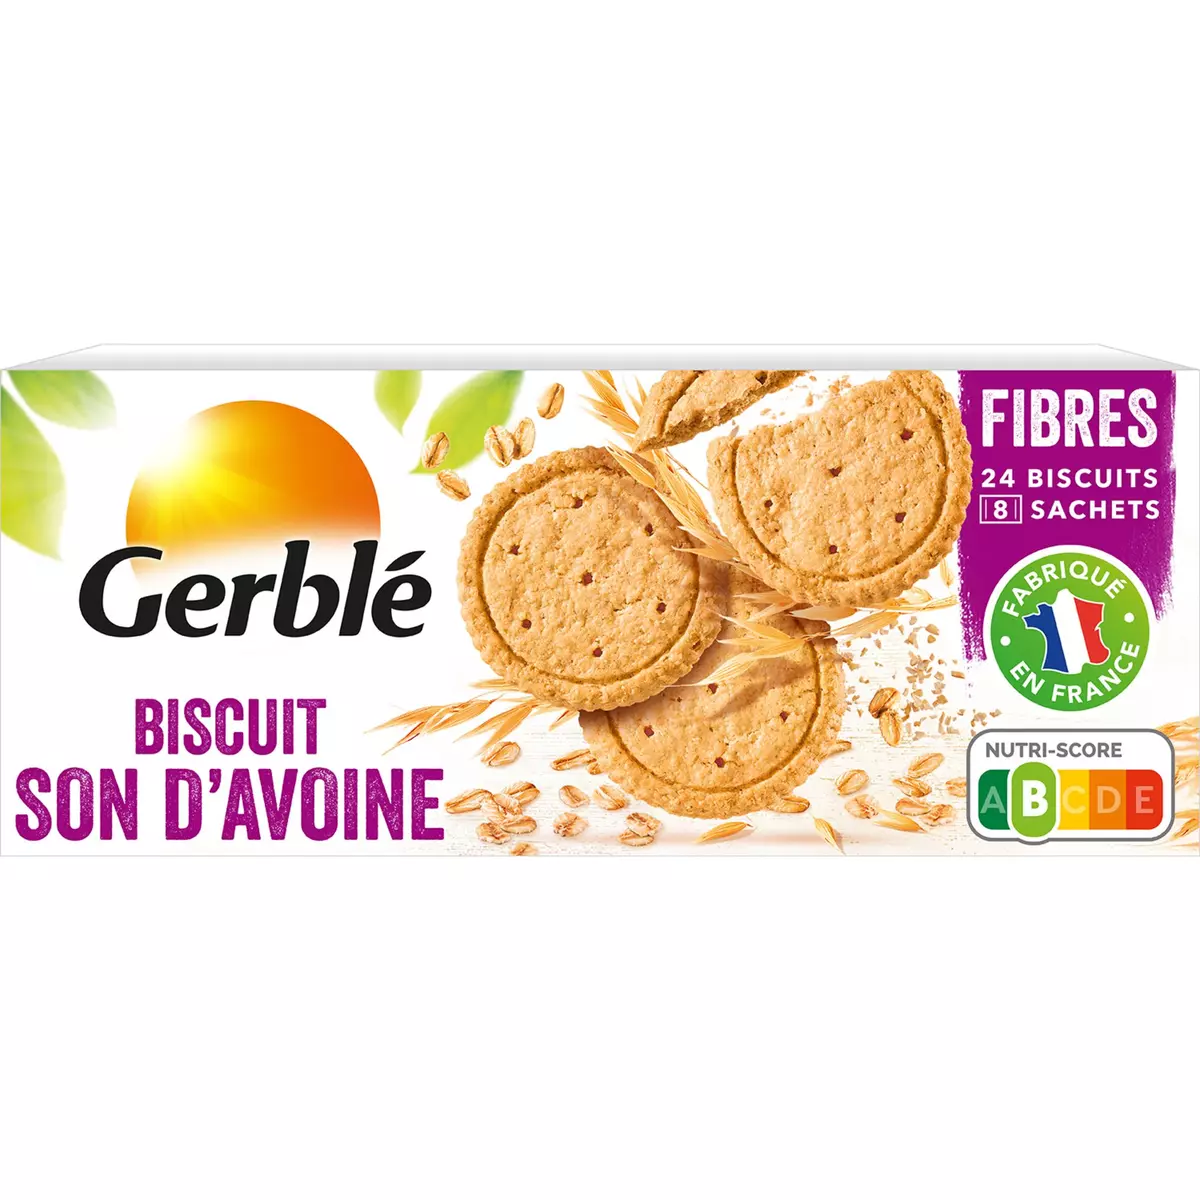 GERBLE Biscuits son d'avoine sans huile de palme, sachets fraîcheur 8x4 biscuits 156g